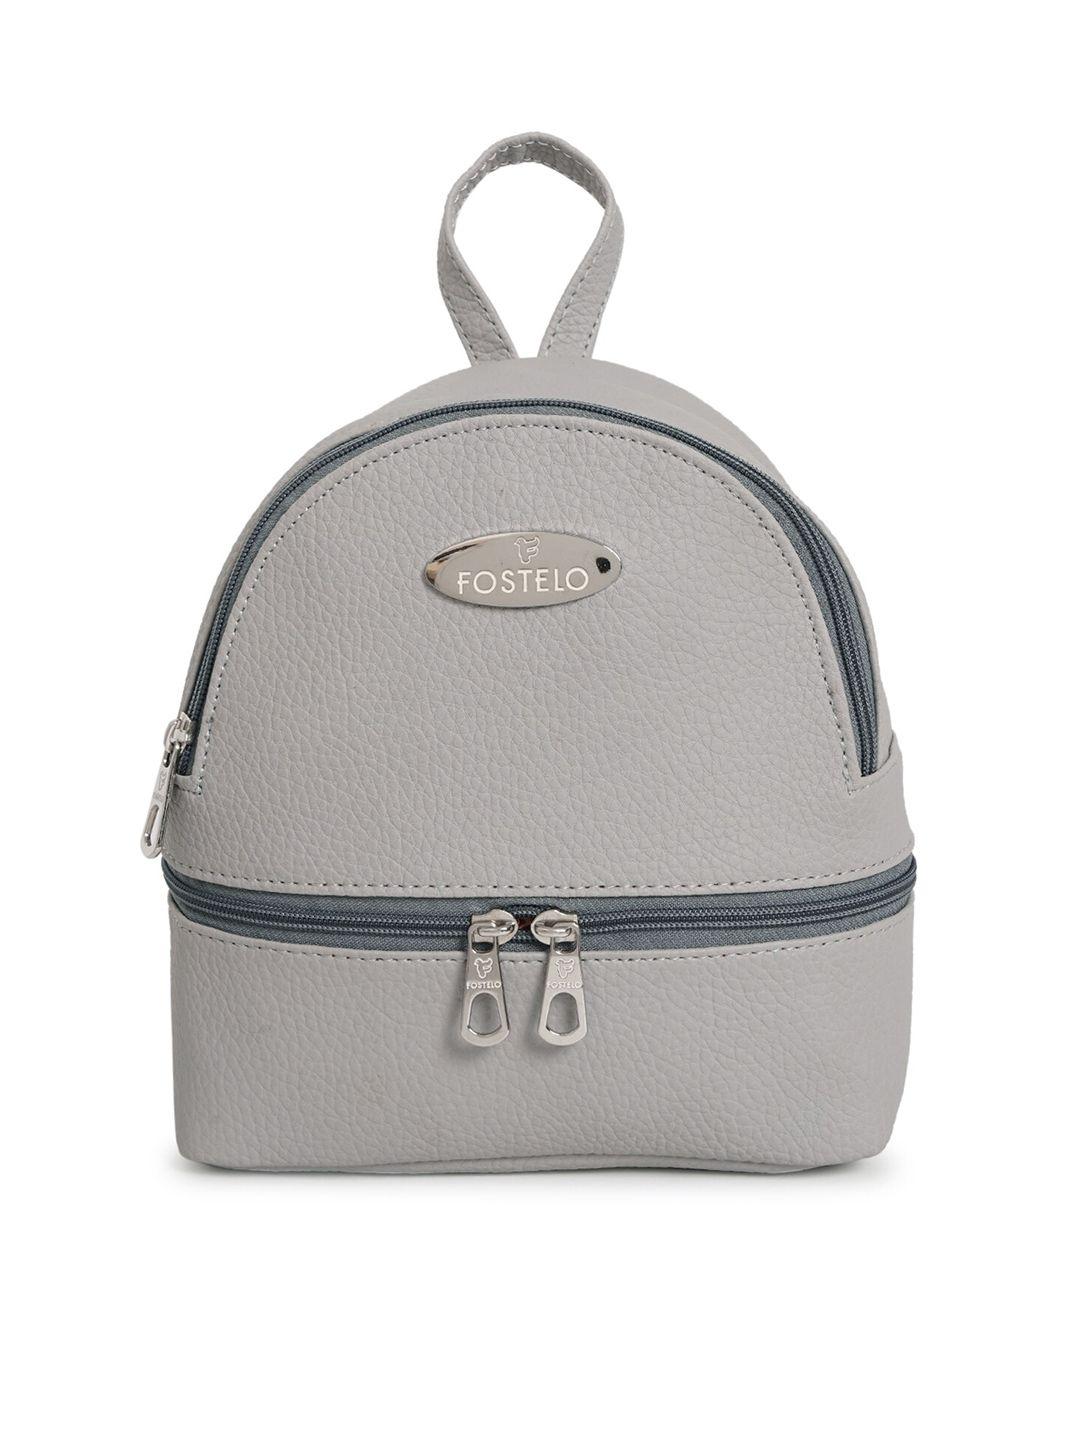 fostelo women grey backpack